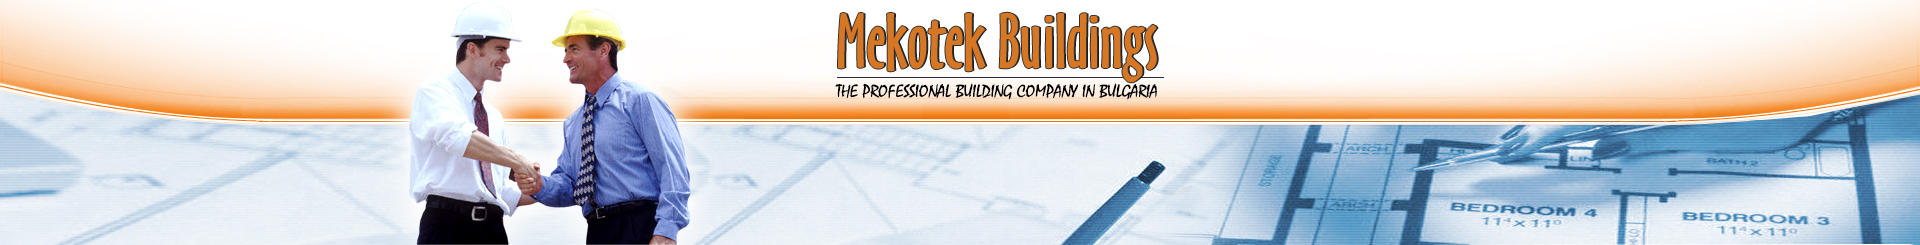 Mekotek Buildings – renovation of properties in Bulgaria